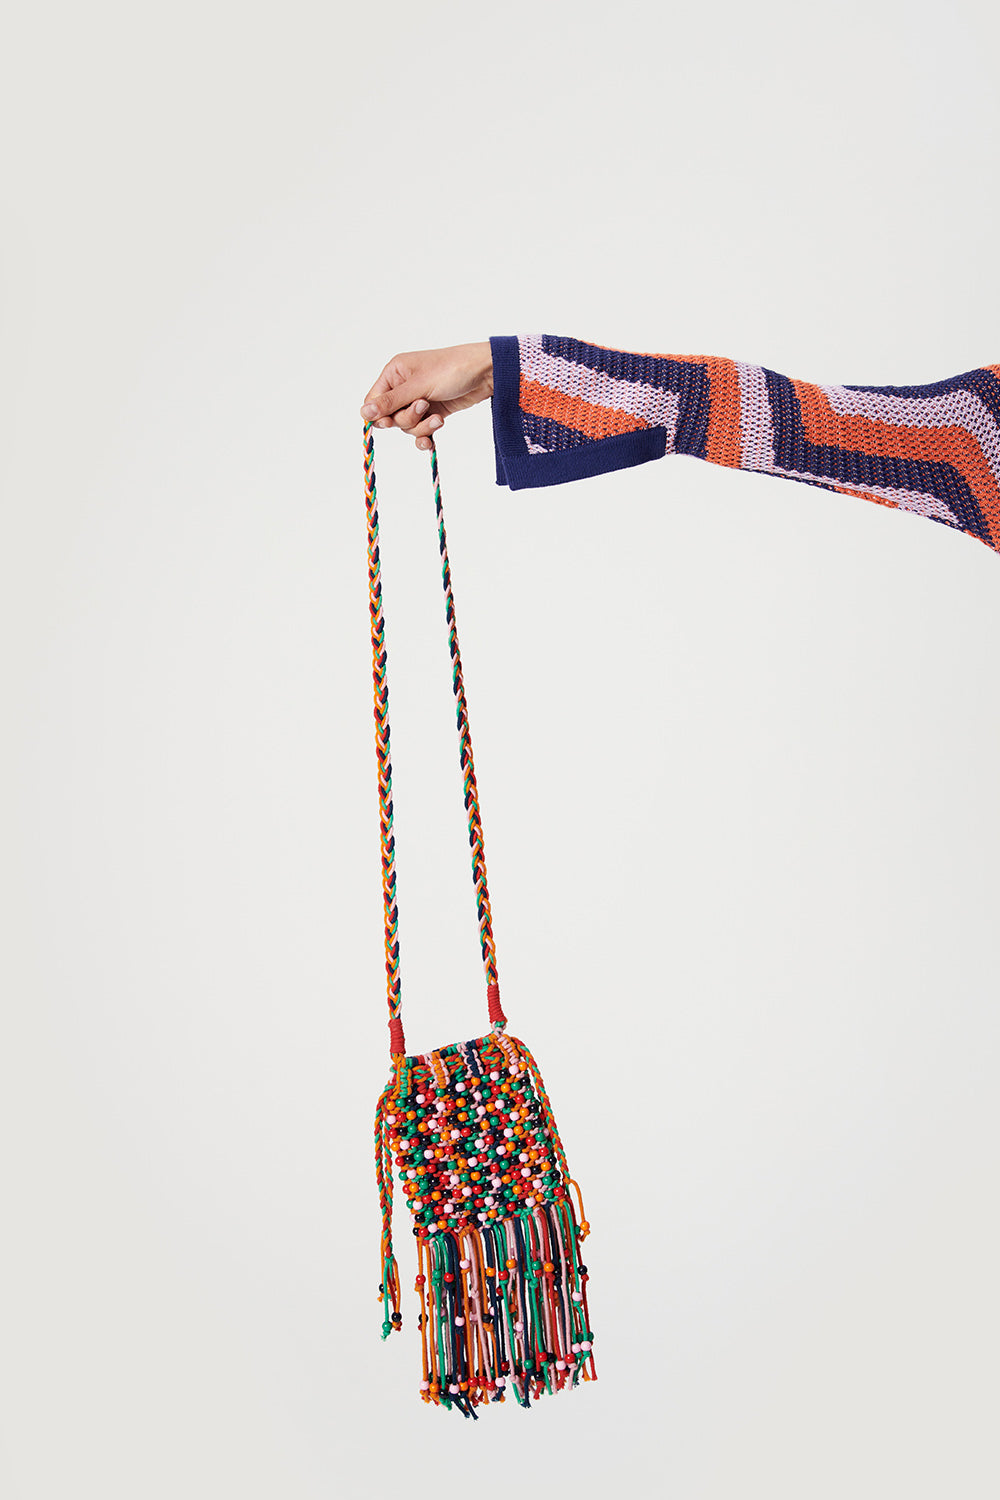 Trippy Hand Knitted Macrame Mini Bag